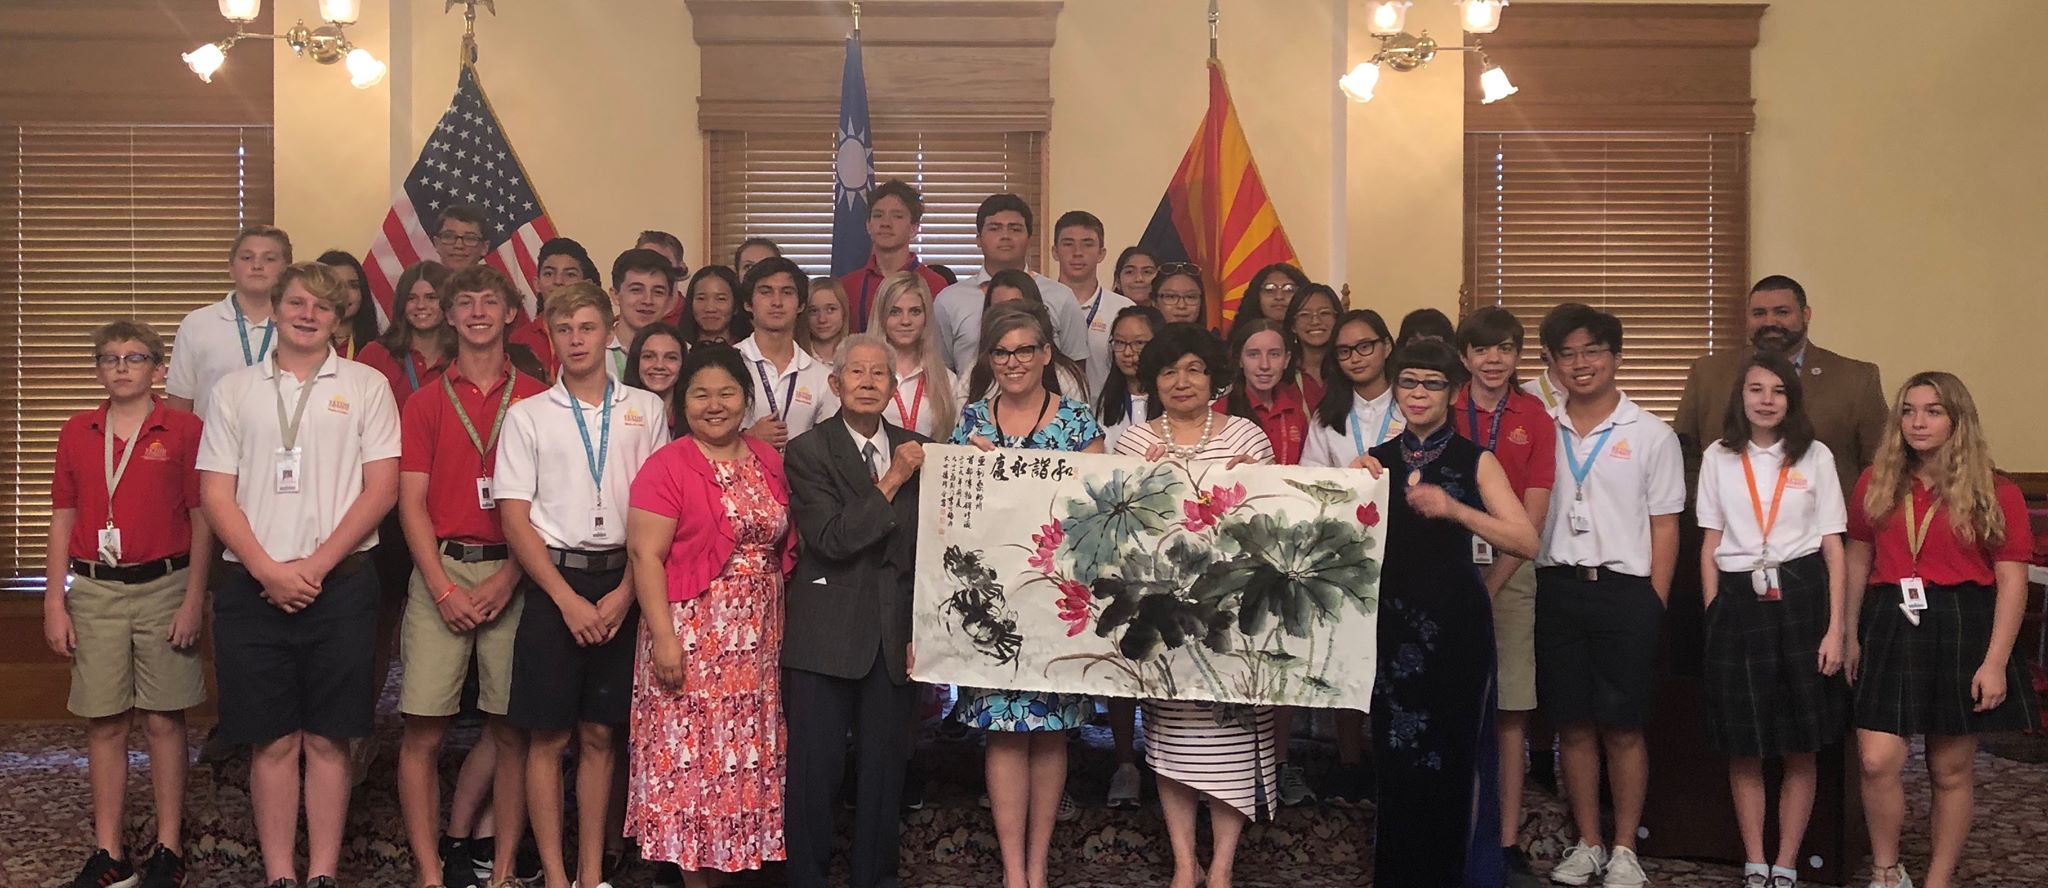 州務卿,州議員,市議員與貴賓和榮獲美國藍帶獎希頓高中共同推廣正體漢字文化